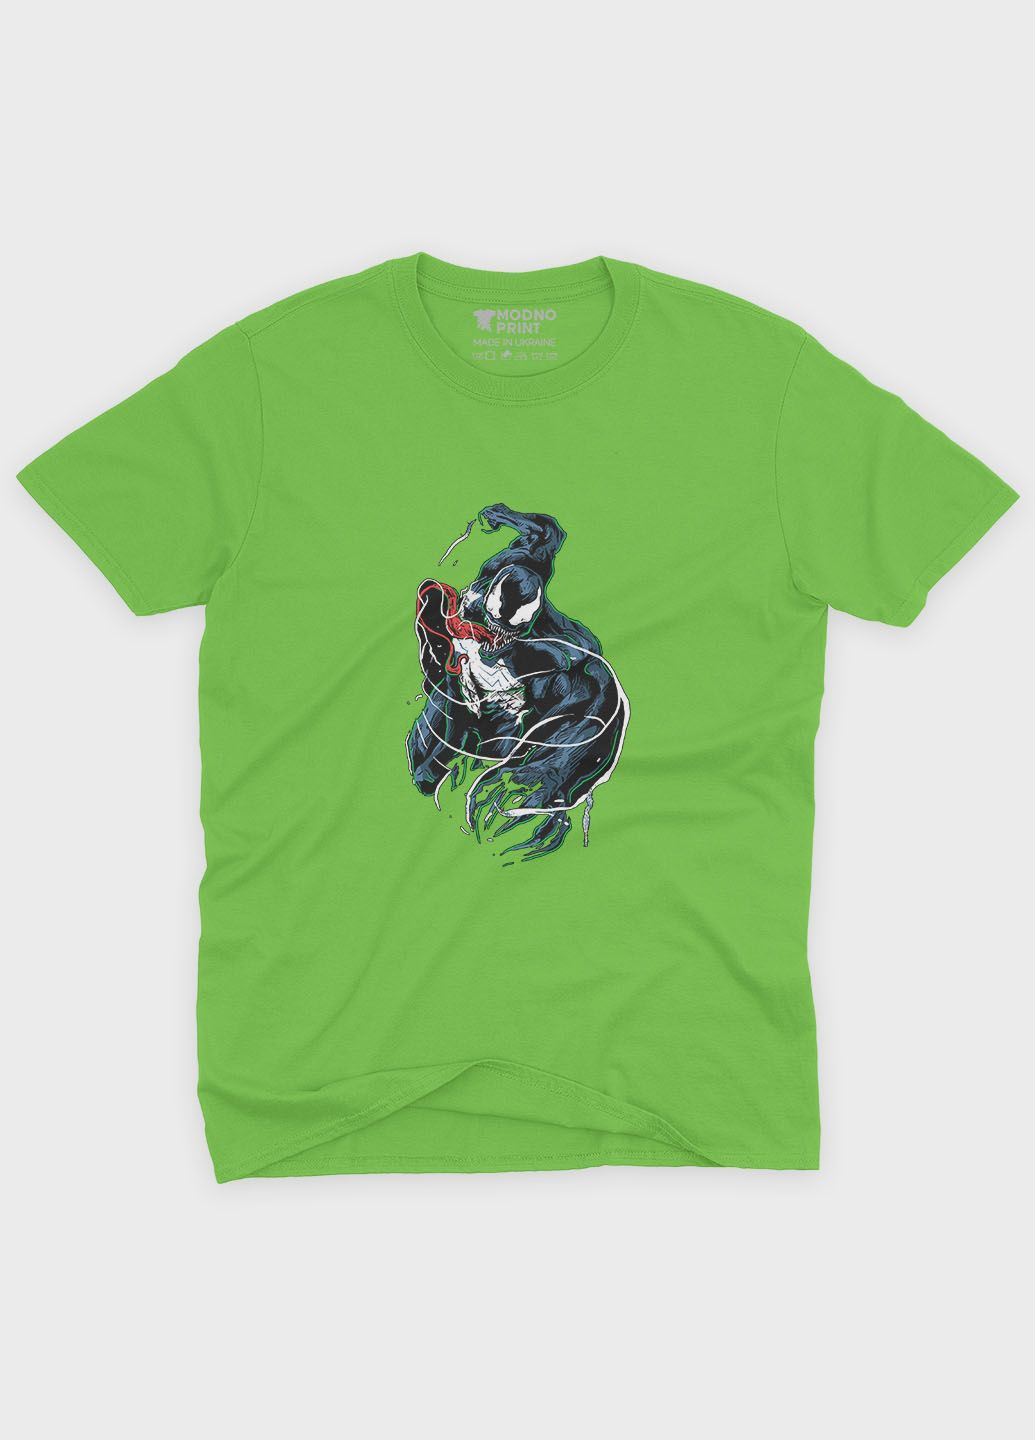 Салатовая демисезонная футболка для мальчика с принтом супервора - веном (ts001-1-kiw-006-013-005-b) Modno